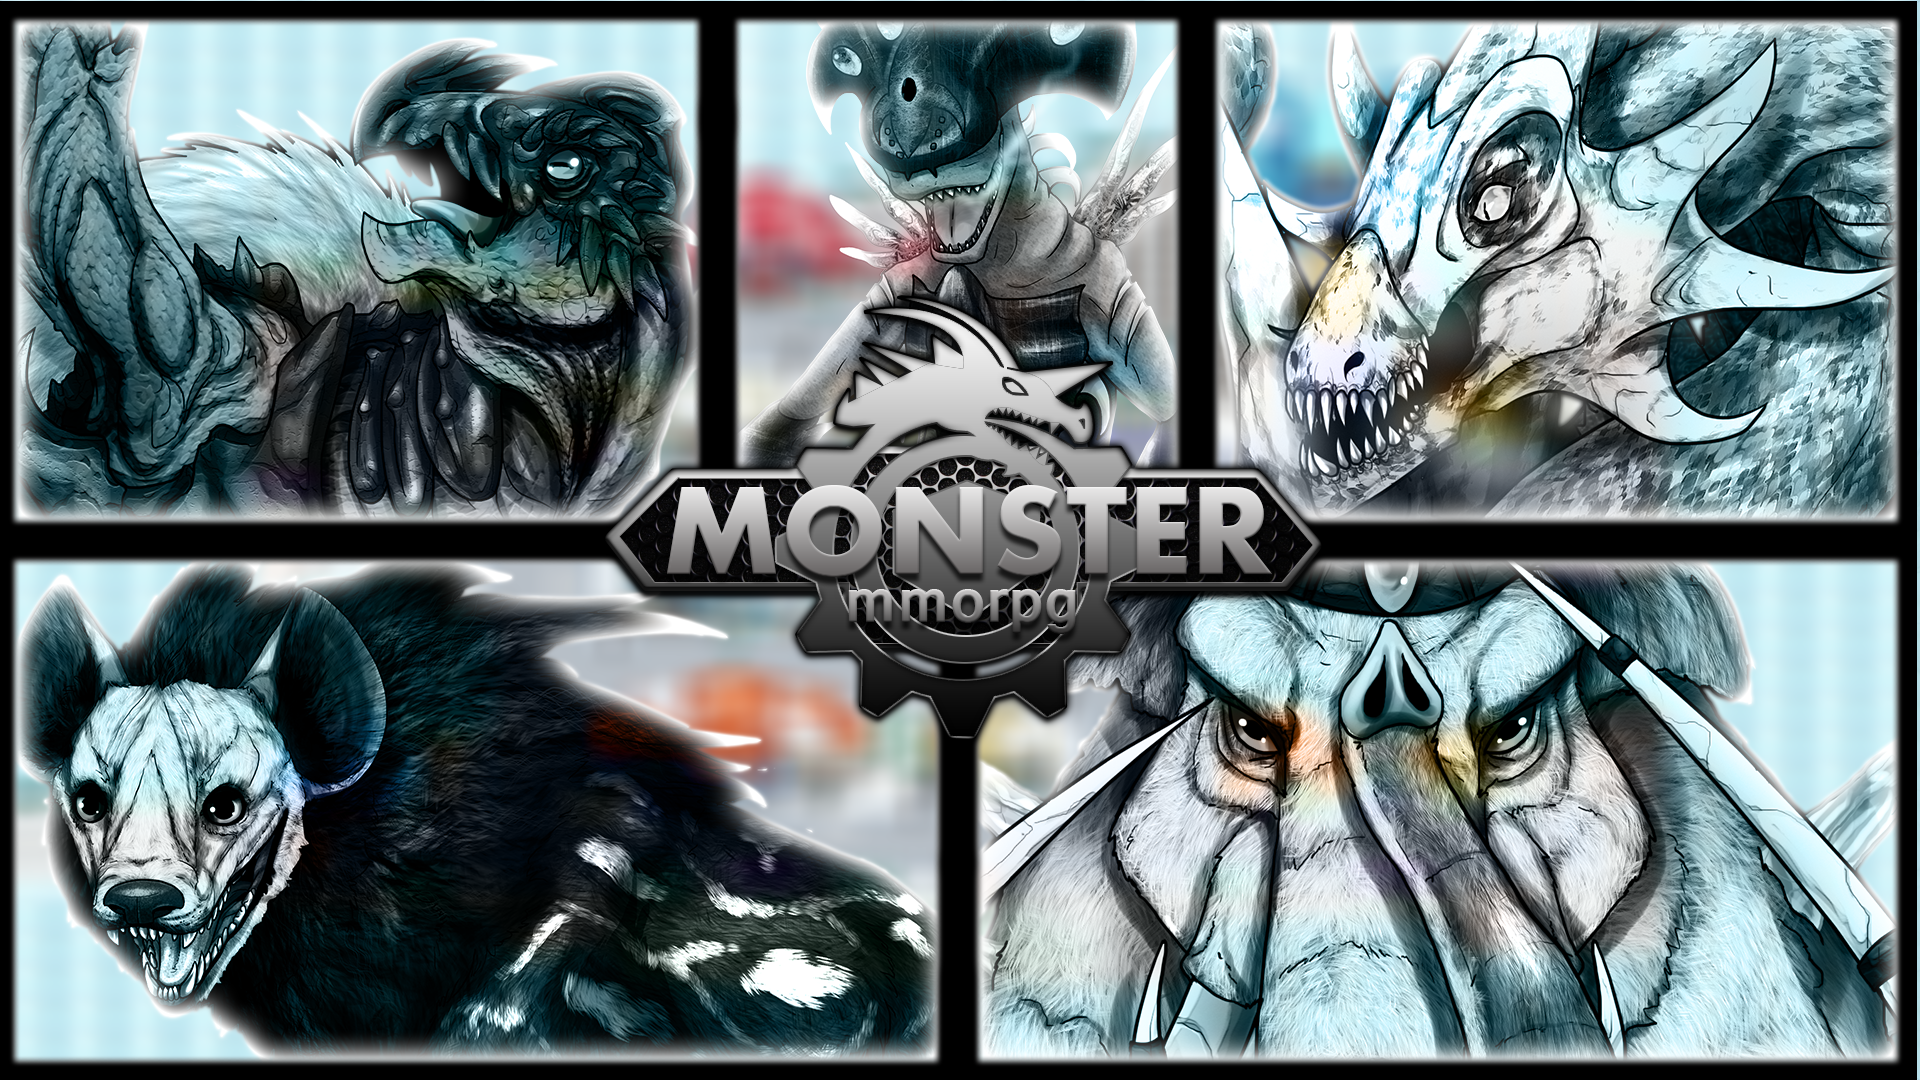 Rpg Indie Game Monstermmorpg Wallpaper Mmorpg Browser Games